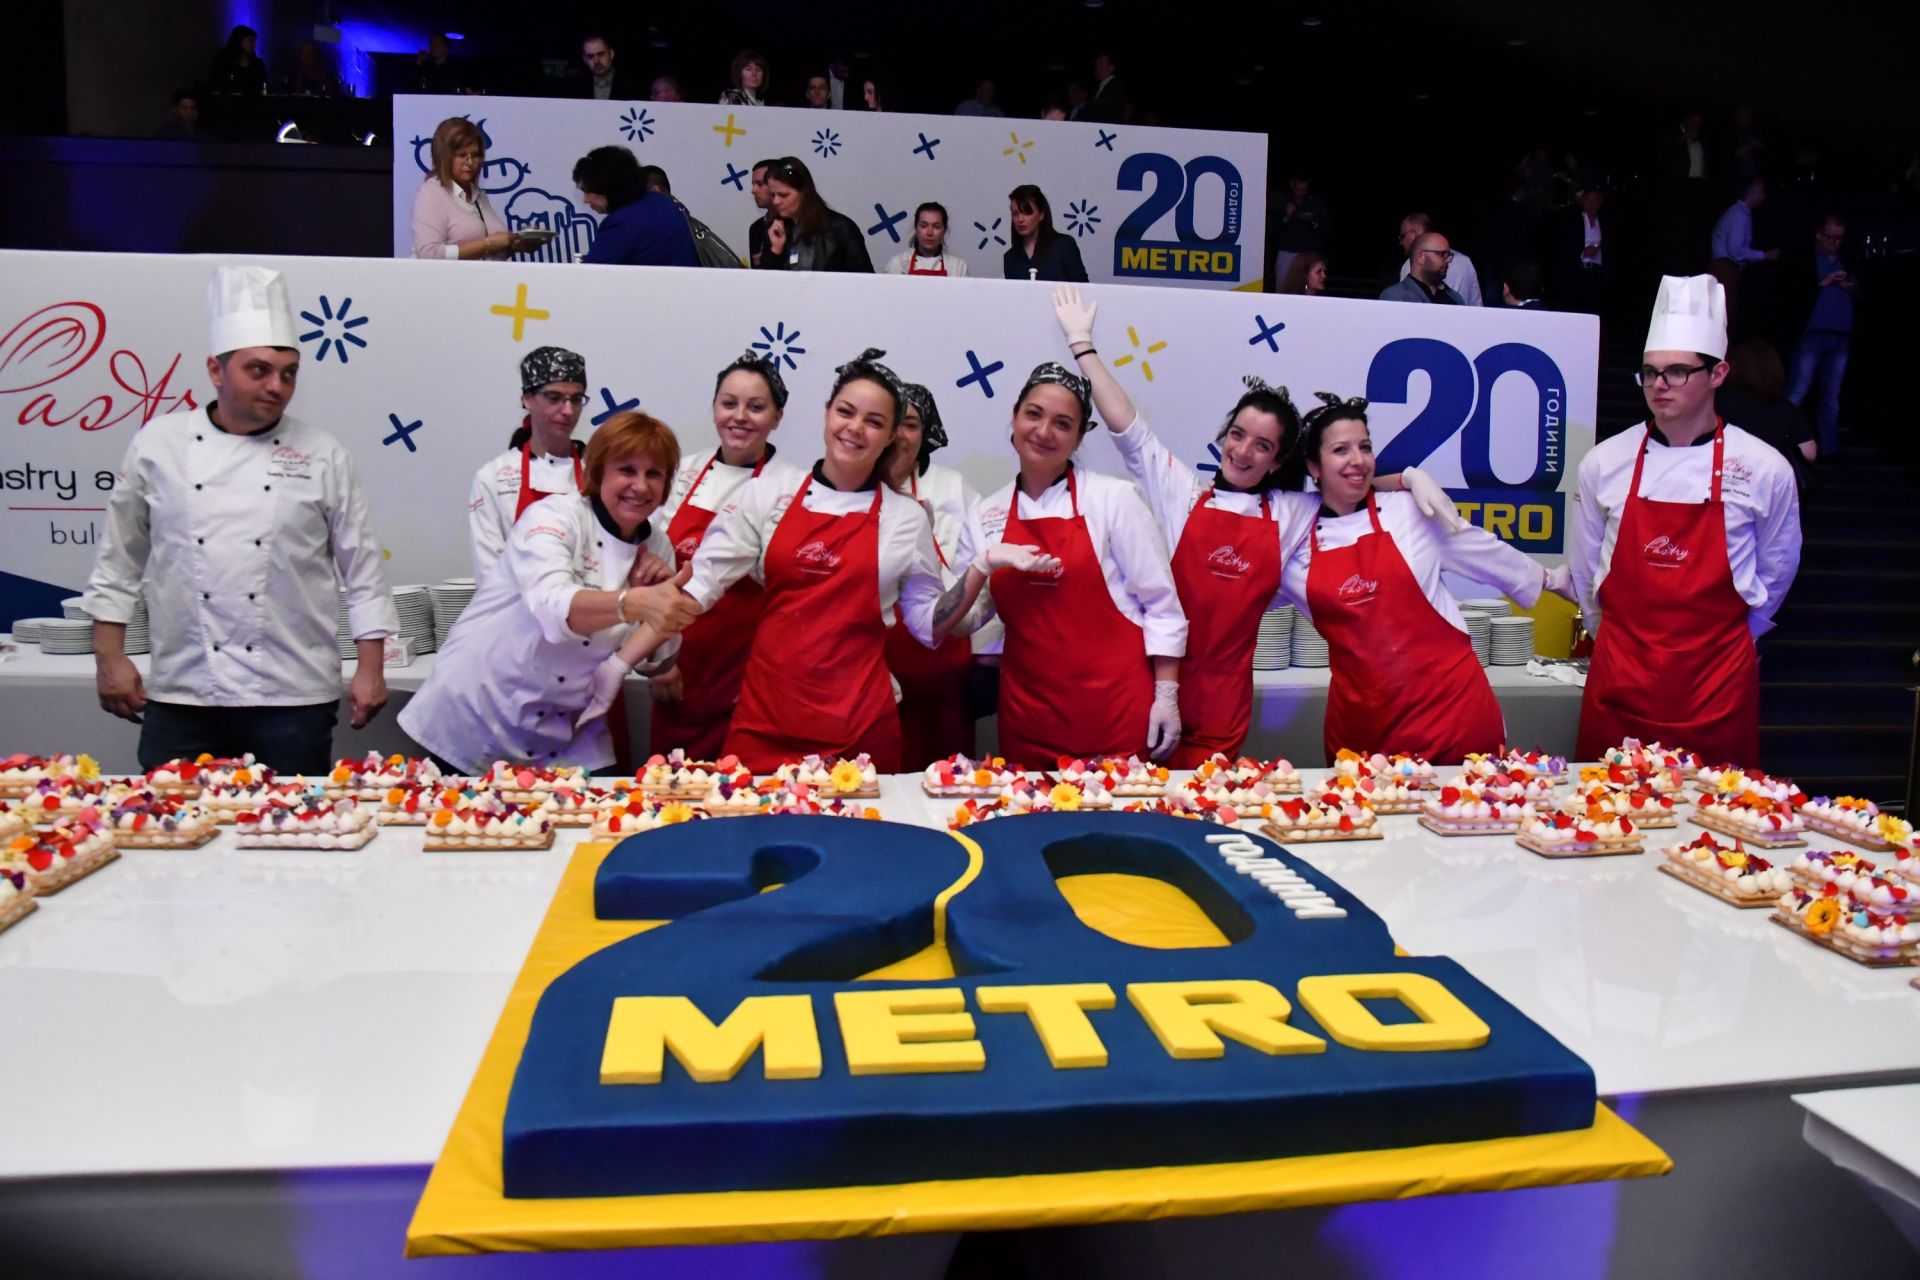 Огромна торта, изработена под формата на синьо-жълтото лого на "МЕТРО" е подготвена от сладкарите на кулинарната академия "Пастри".